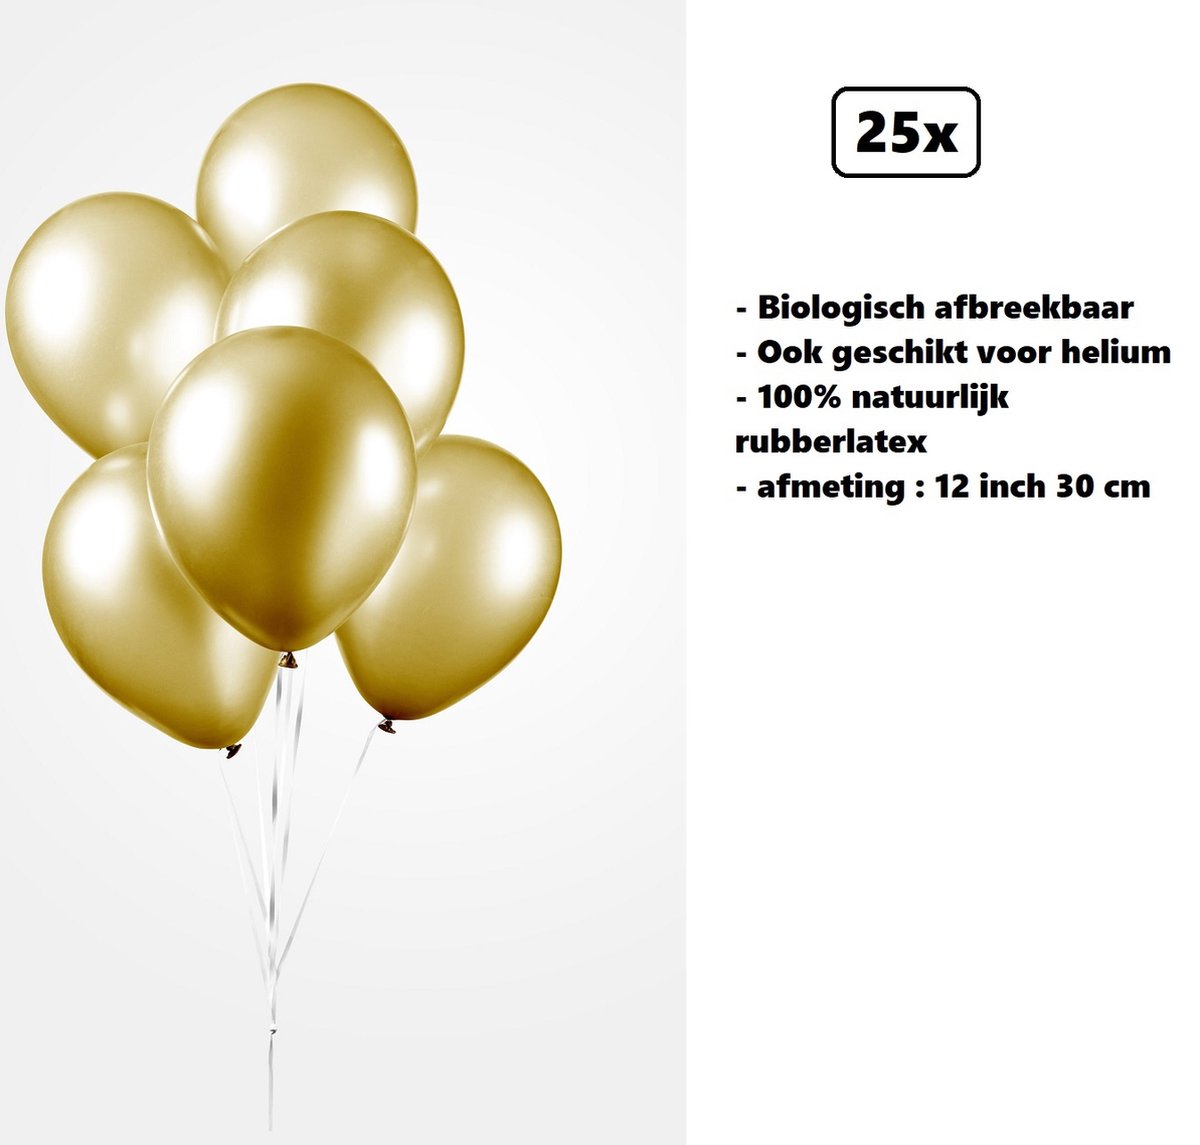 25x Ballons 12 pouces perle or 30cm - biodégradable - Festival party fête  anniversaire